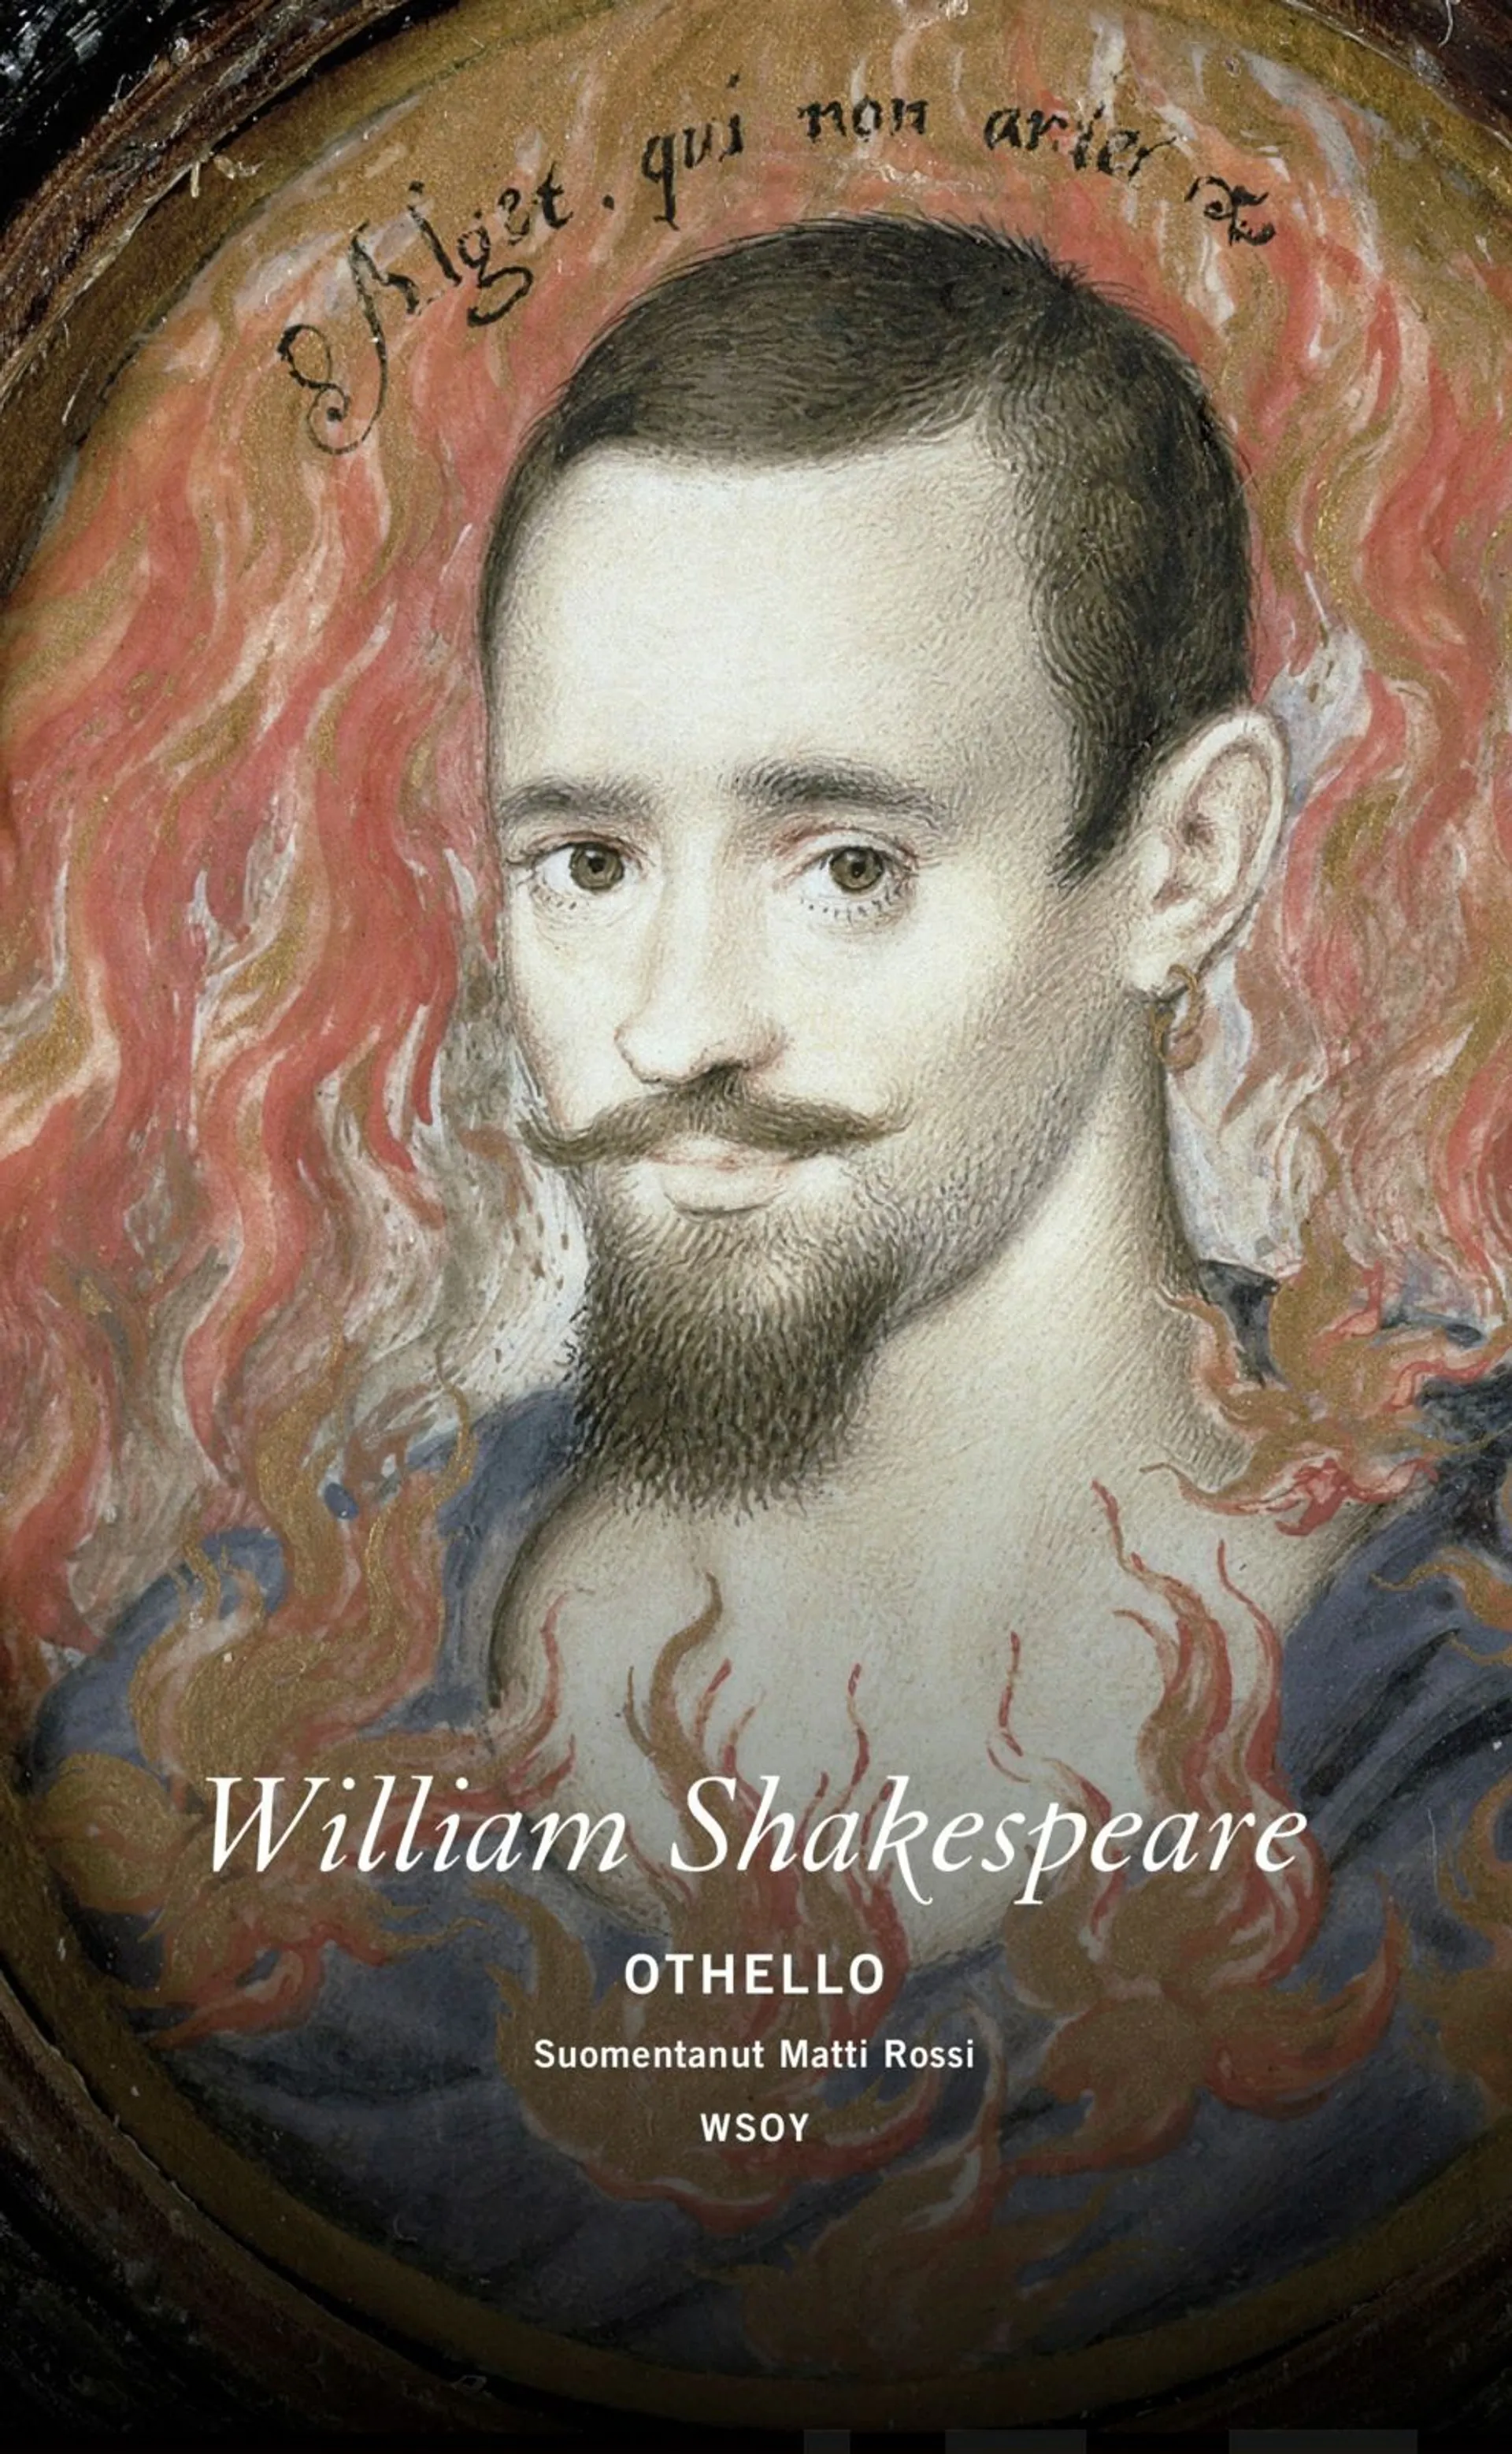 Shakespeare, Othello - Venetsian mauri